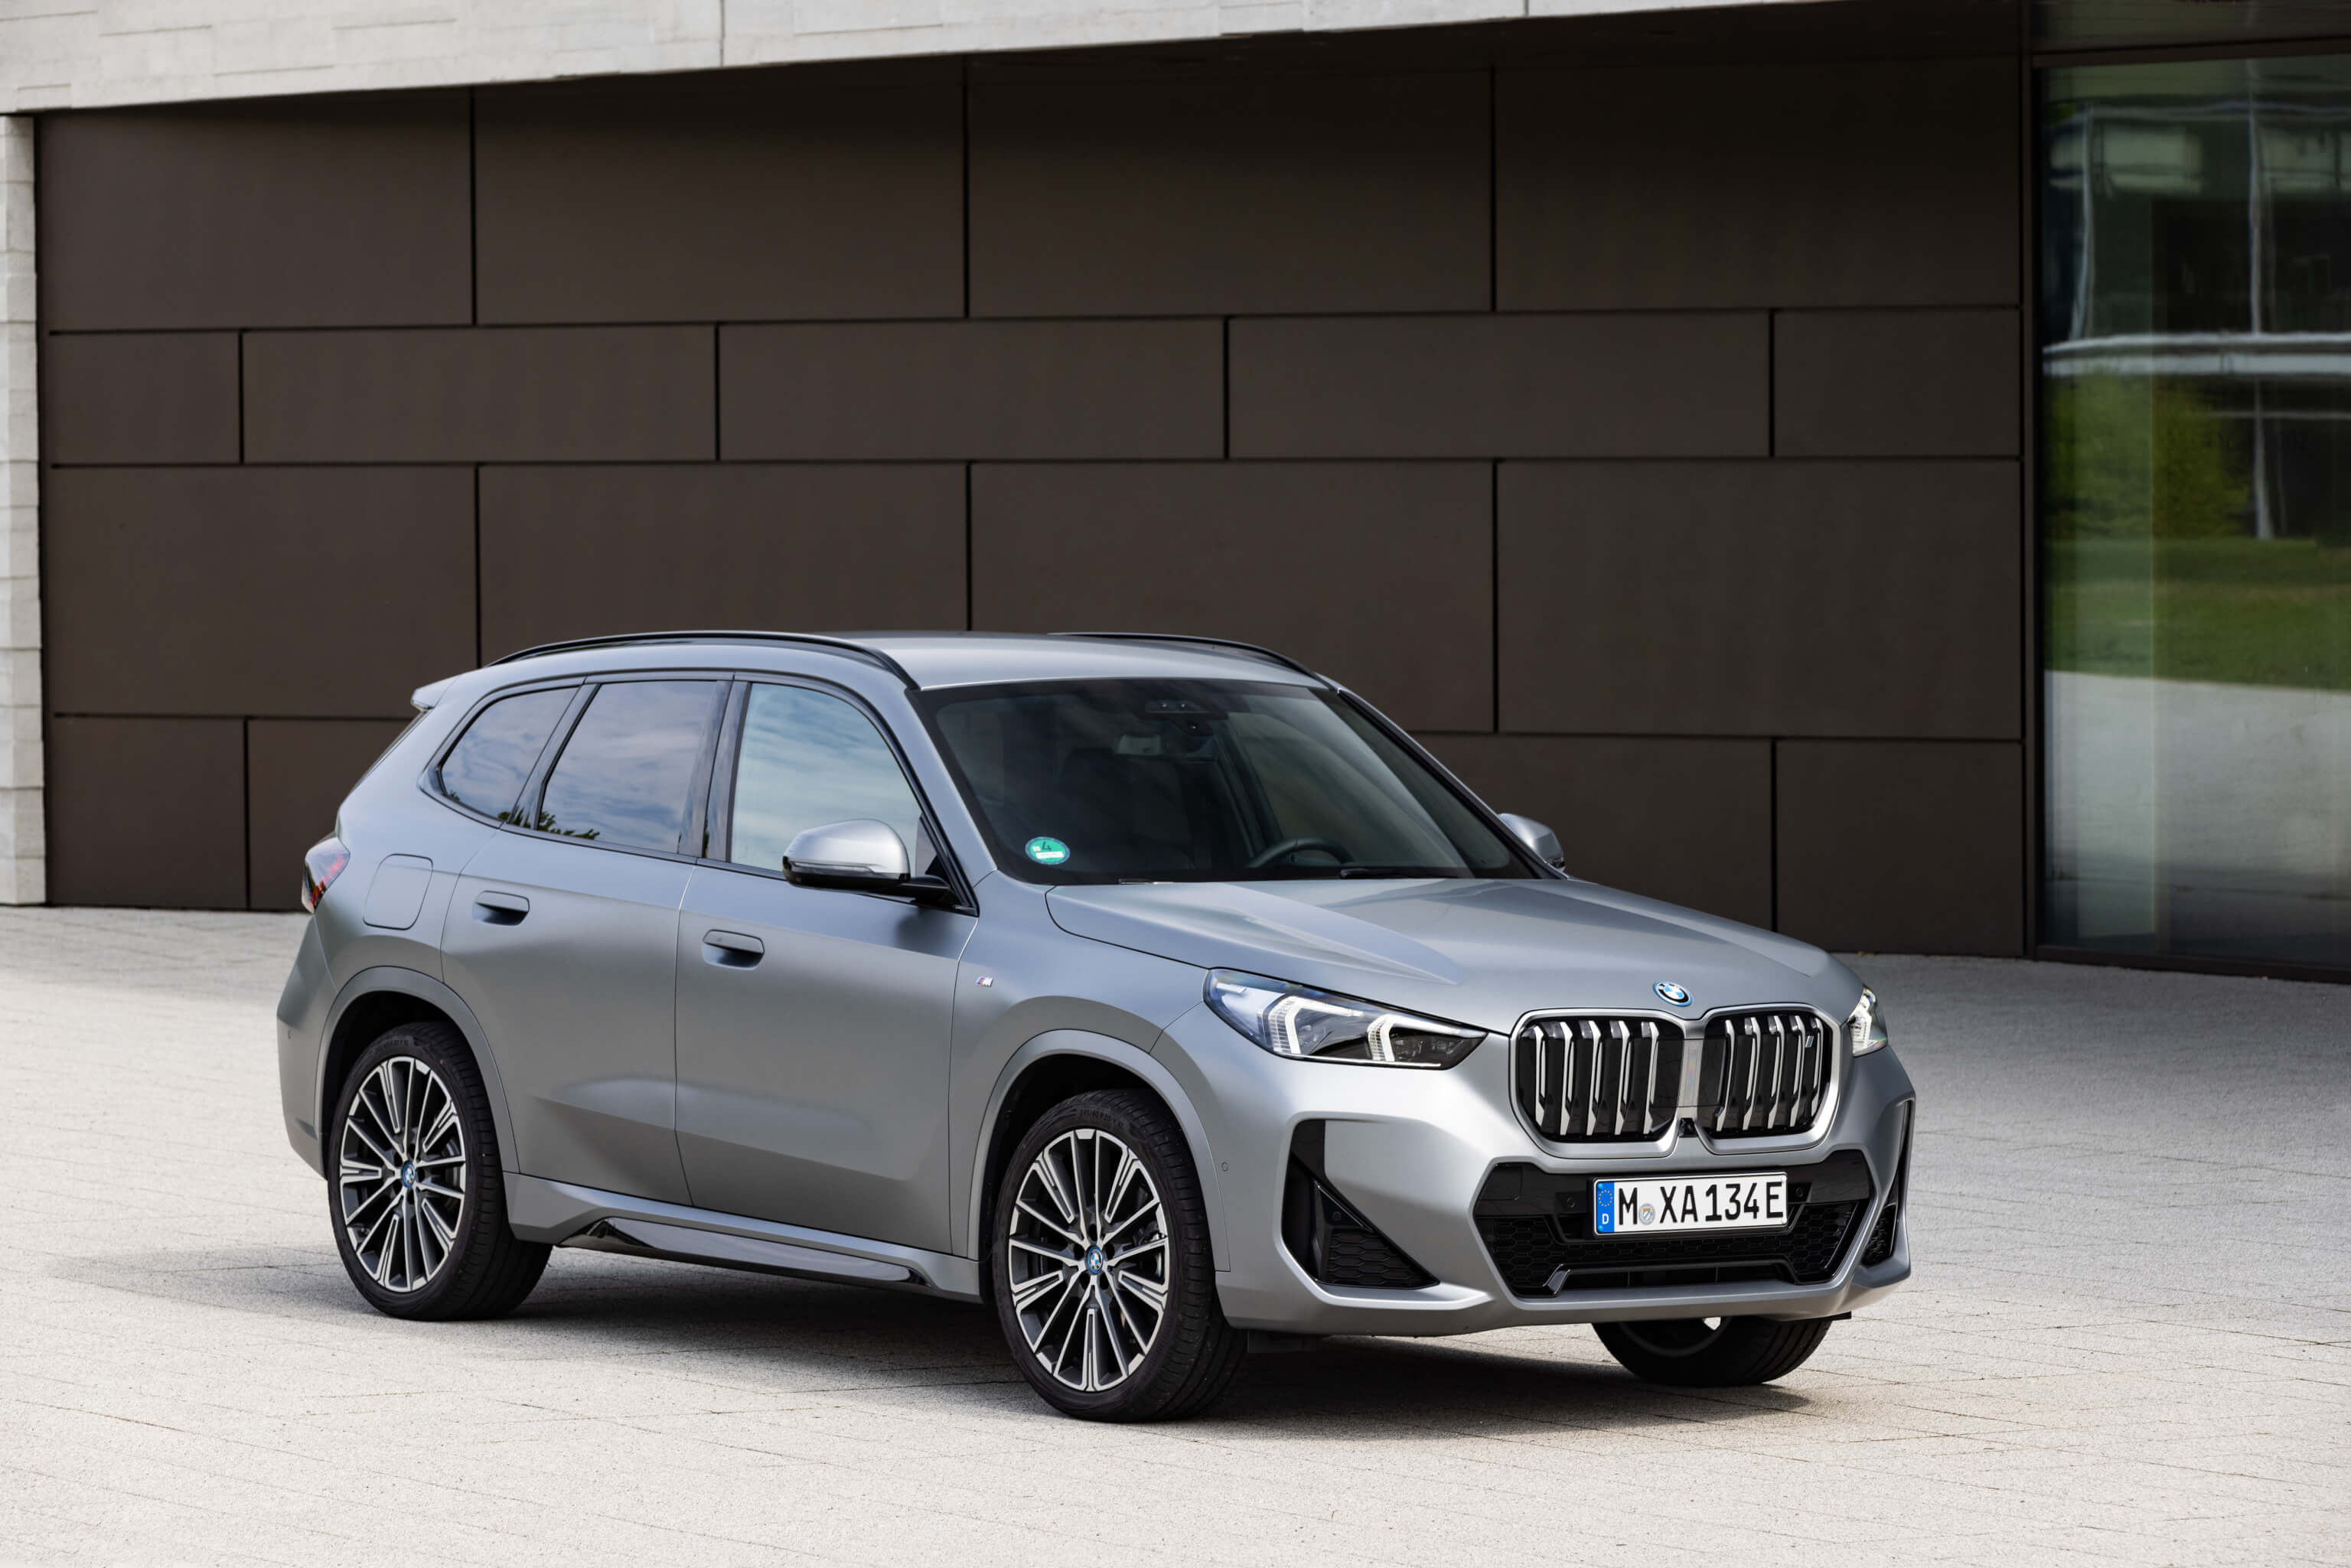 BMW X1 Leasing für 420 Euro im Monat brutto sparneuwagen.de